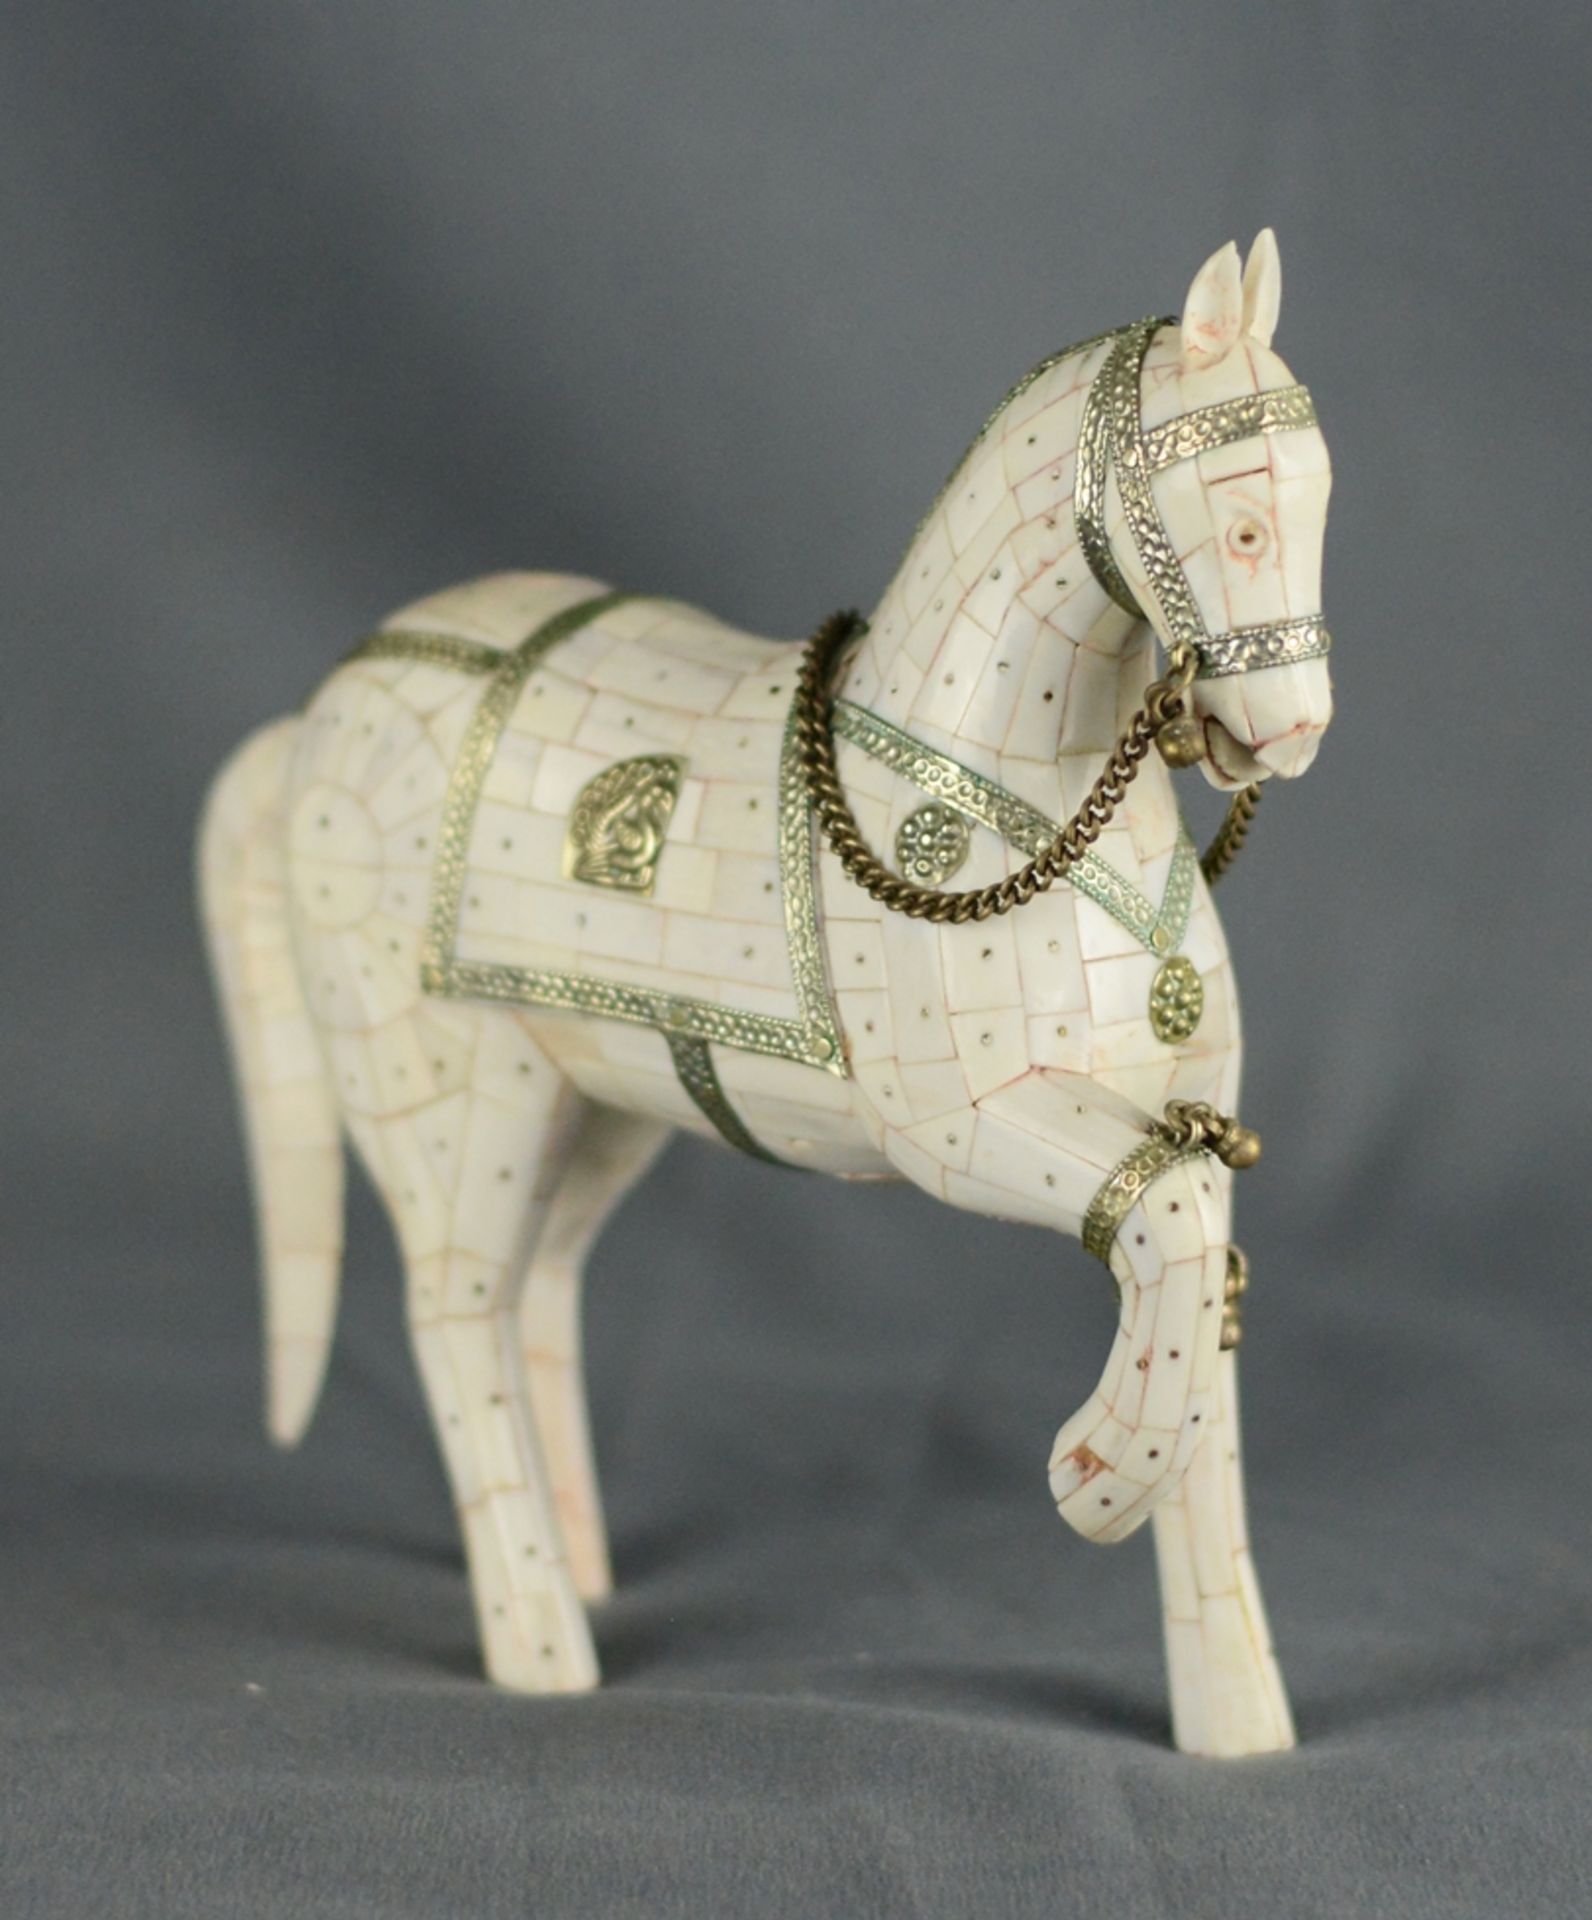 Pferdefigur, mit Perlmuttplatten gearbeitet, Korpus aus Bein, dekoriert mit Beschlägen in Silber und